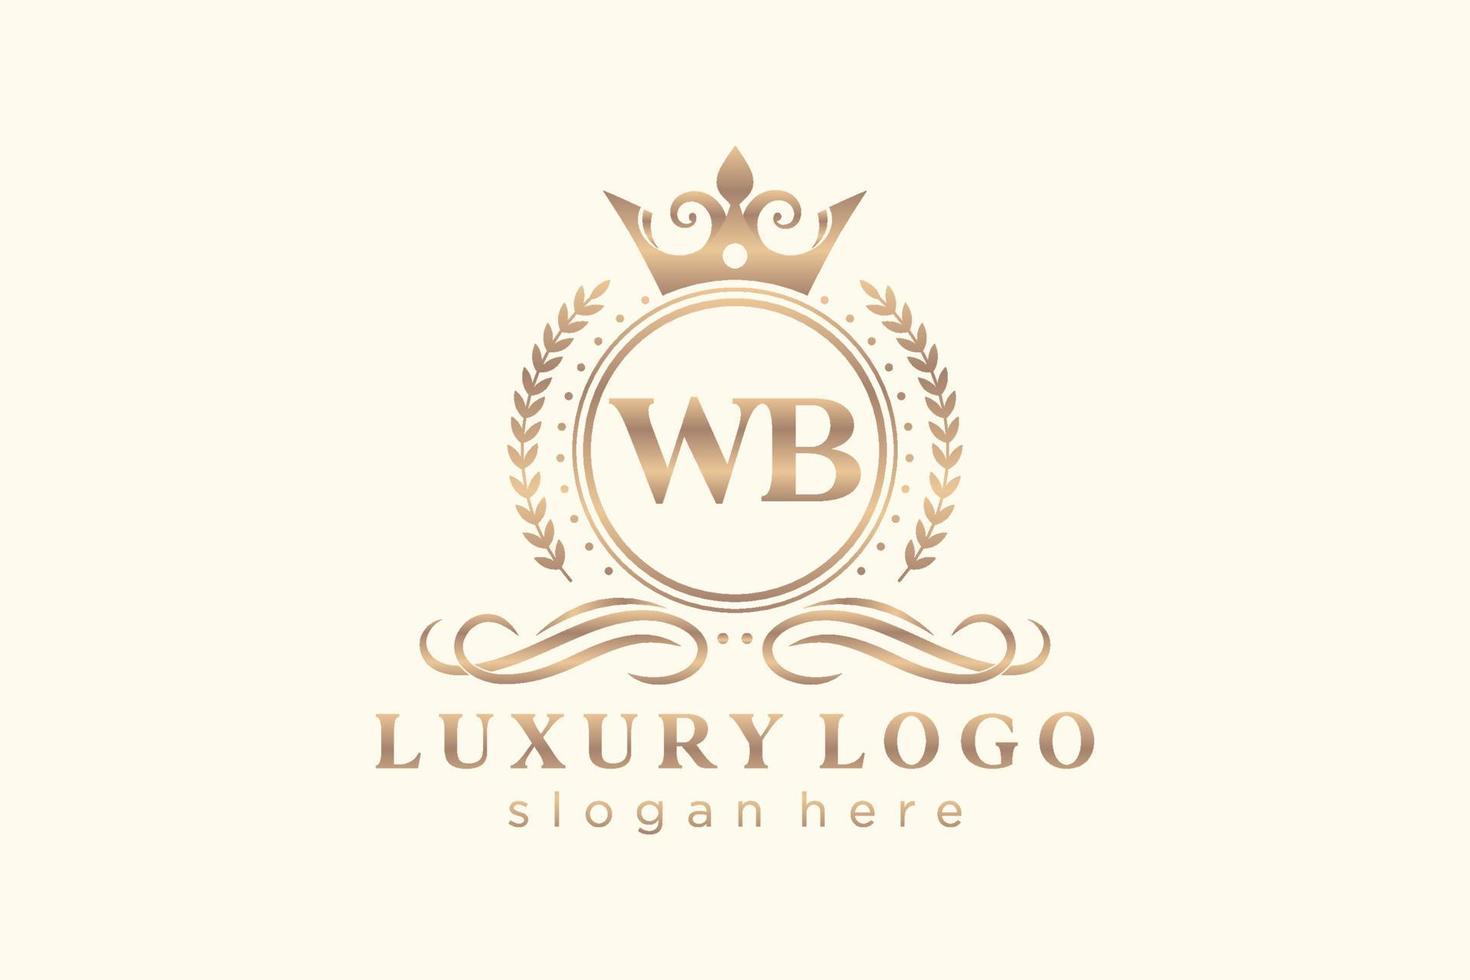 modèle de logo de luxe royal lettre initiale wb en art vectoriel pour restaurant, royauté, boutique, café, hôtel, héraldique, bijoux, mode et autres illustrations vectorielles.